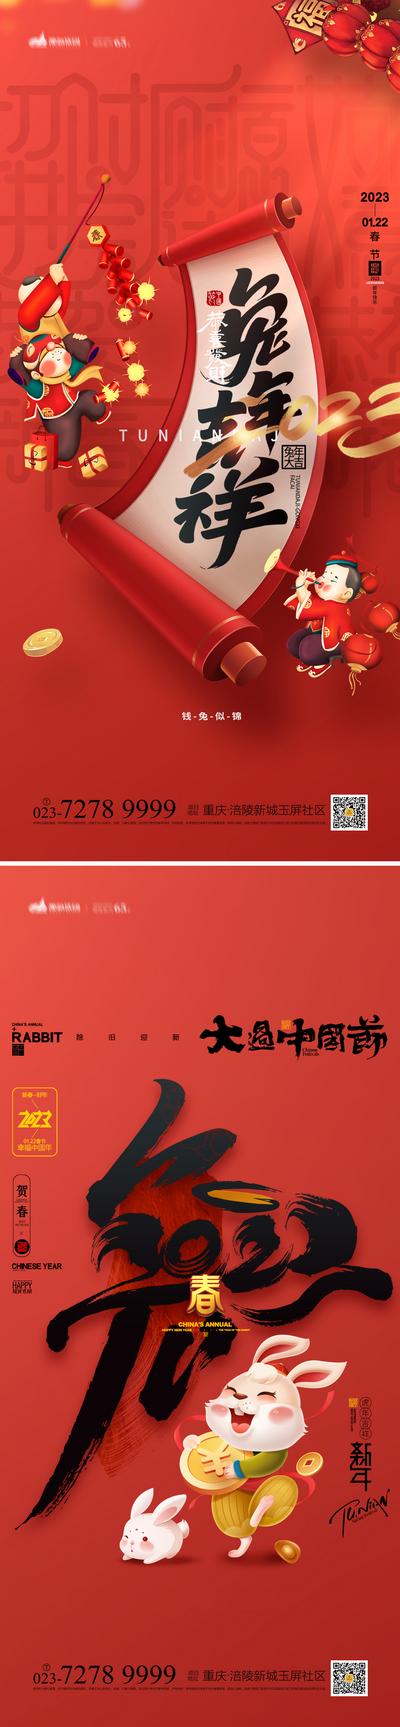 南门网 海报 中国传统节日 春节 新春 新年 兔年 2023 兔子 插画 喜庆